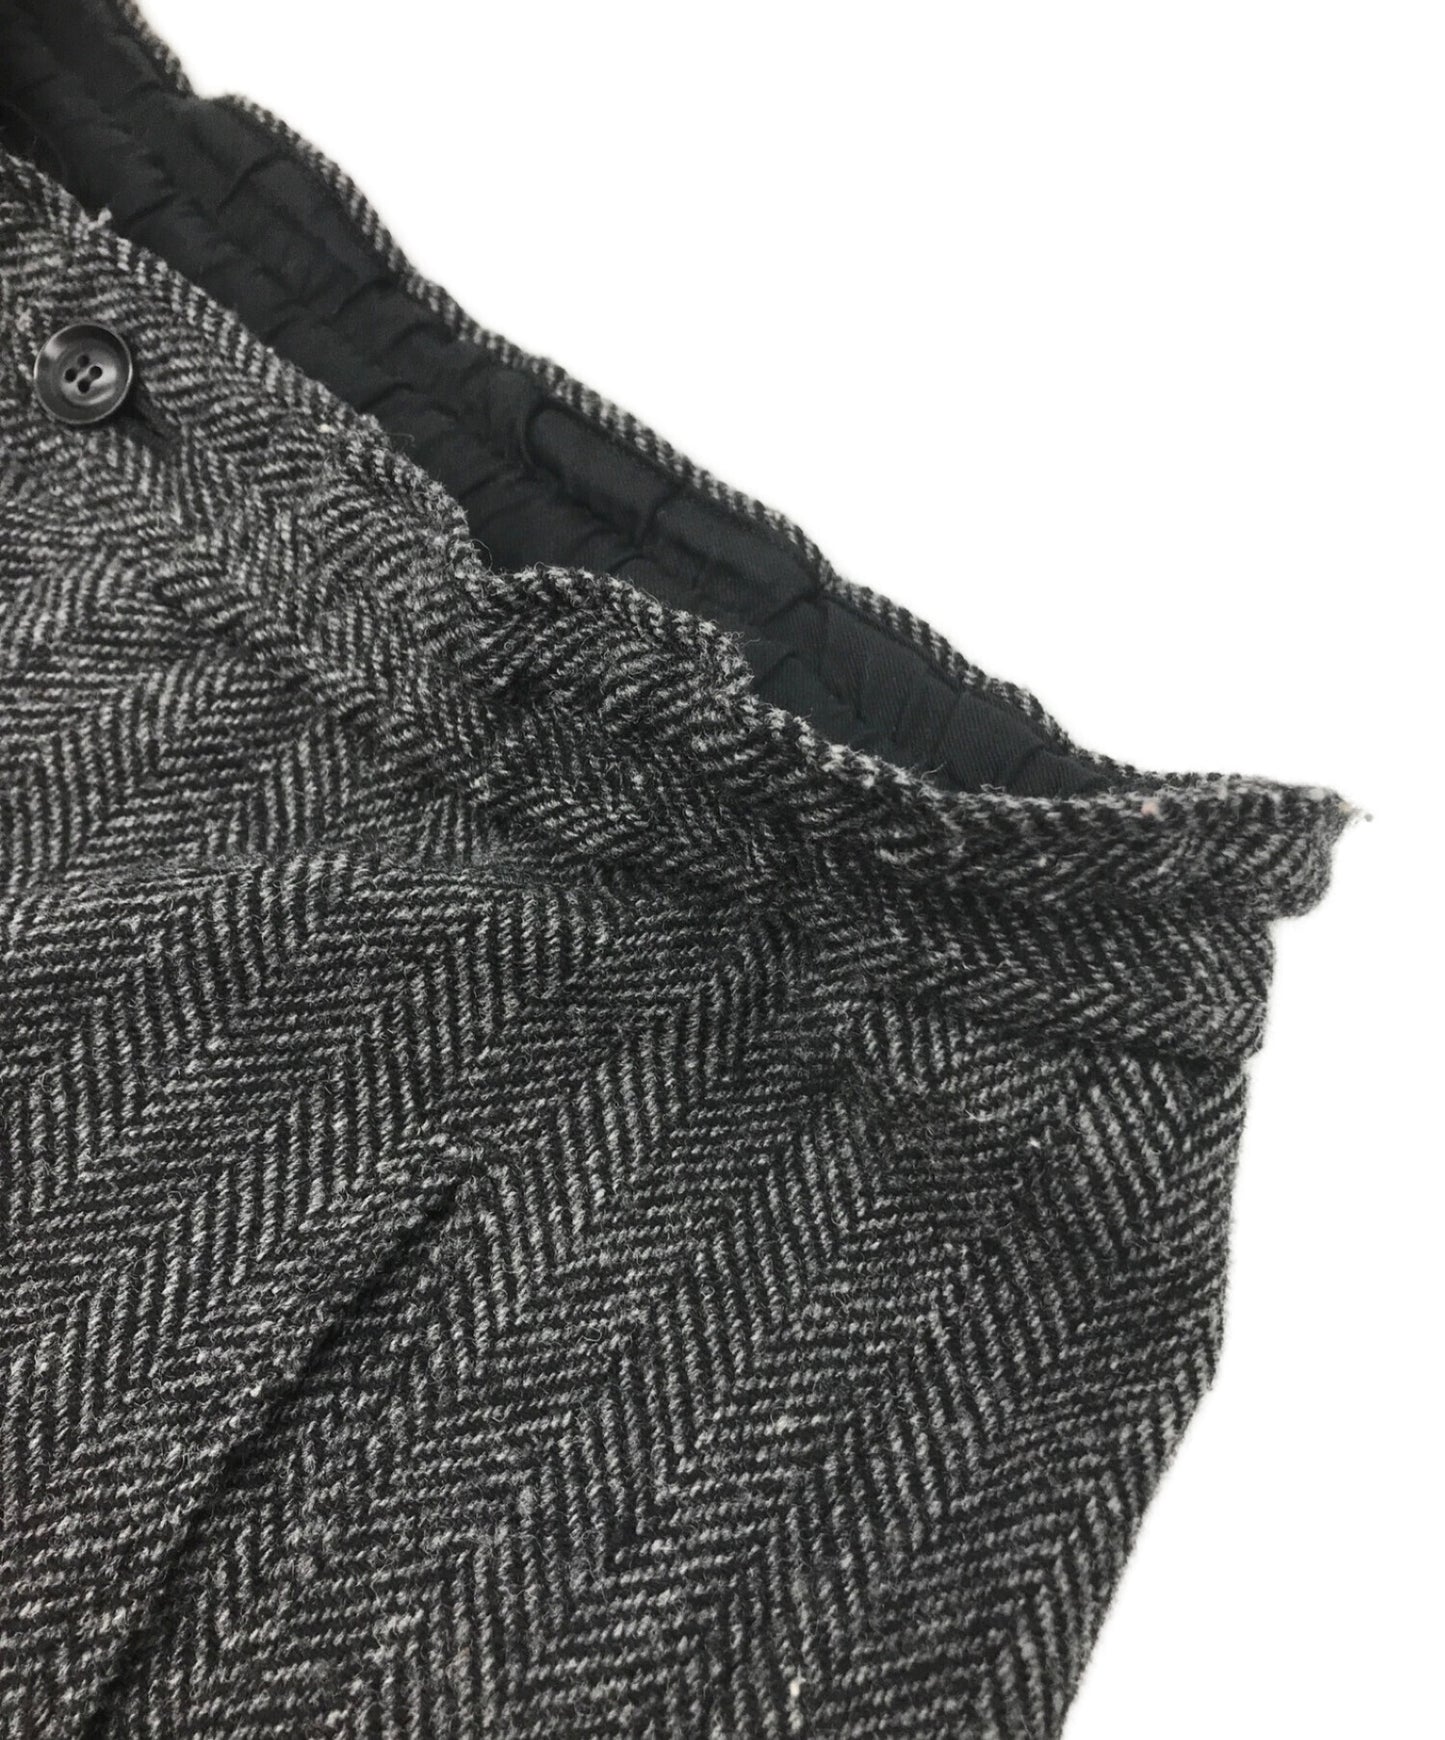 [Pre-owned] Y's Wool herringbone pants with hem zipper YE-P09-107